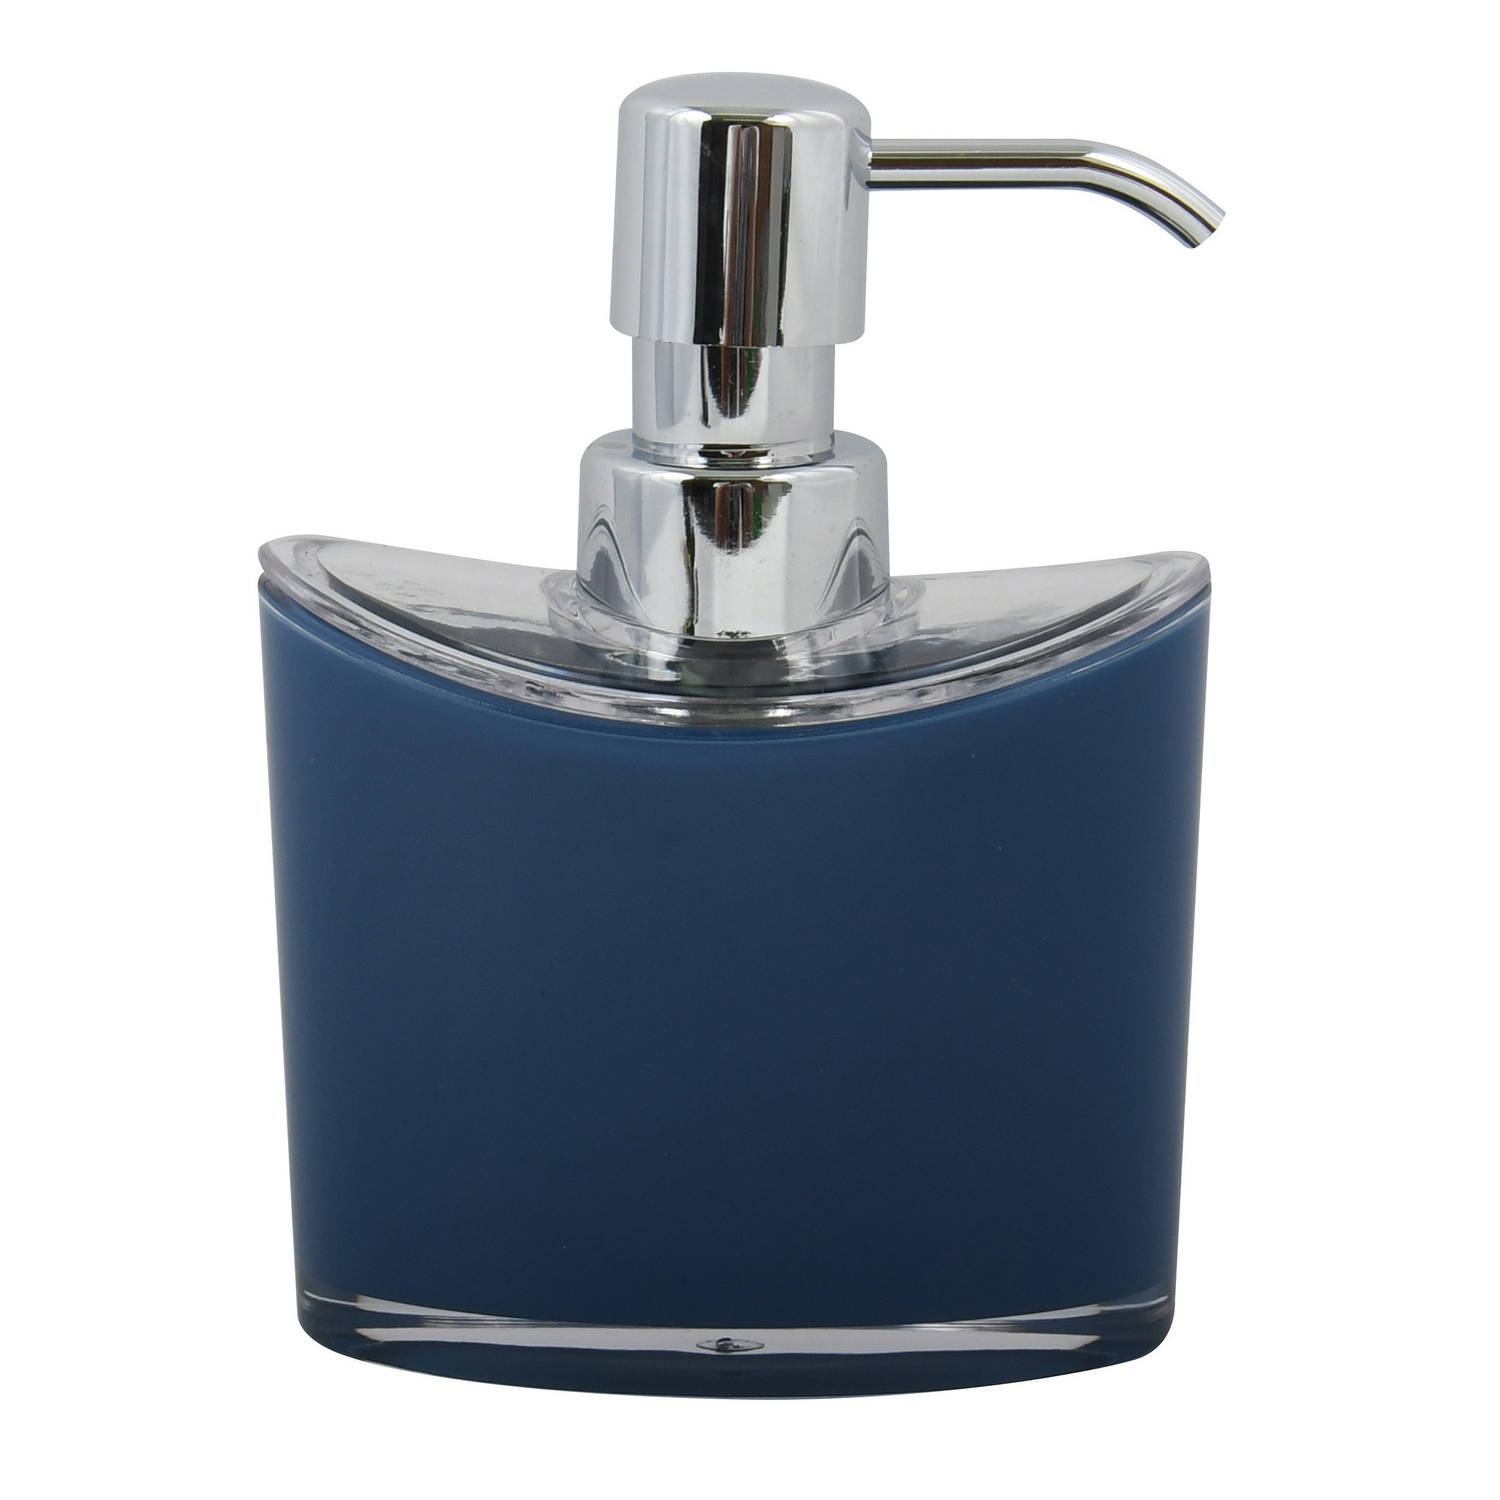 MSV Zeeppompje/dispenser Aveiro - PS kunststof - donkerblauw/zilver - 11 x 14 cm - 260 ml